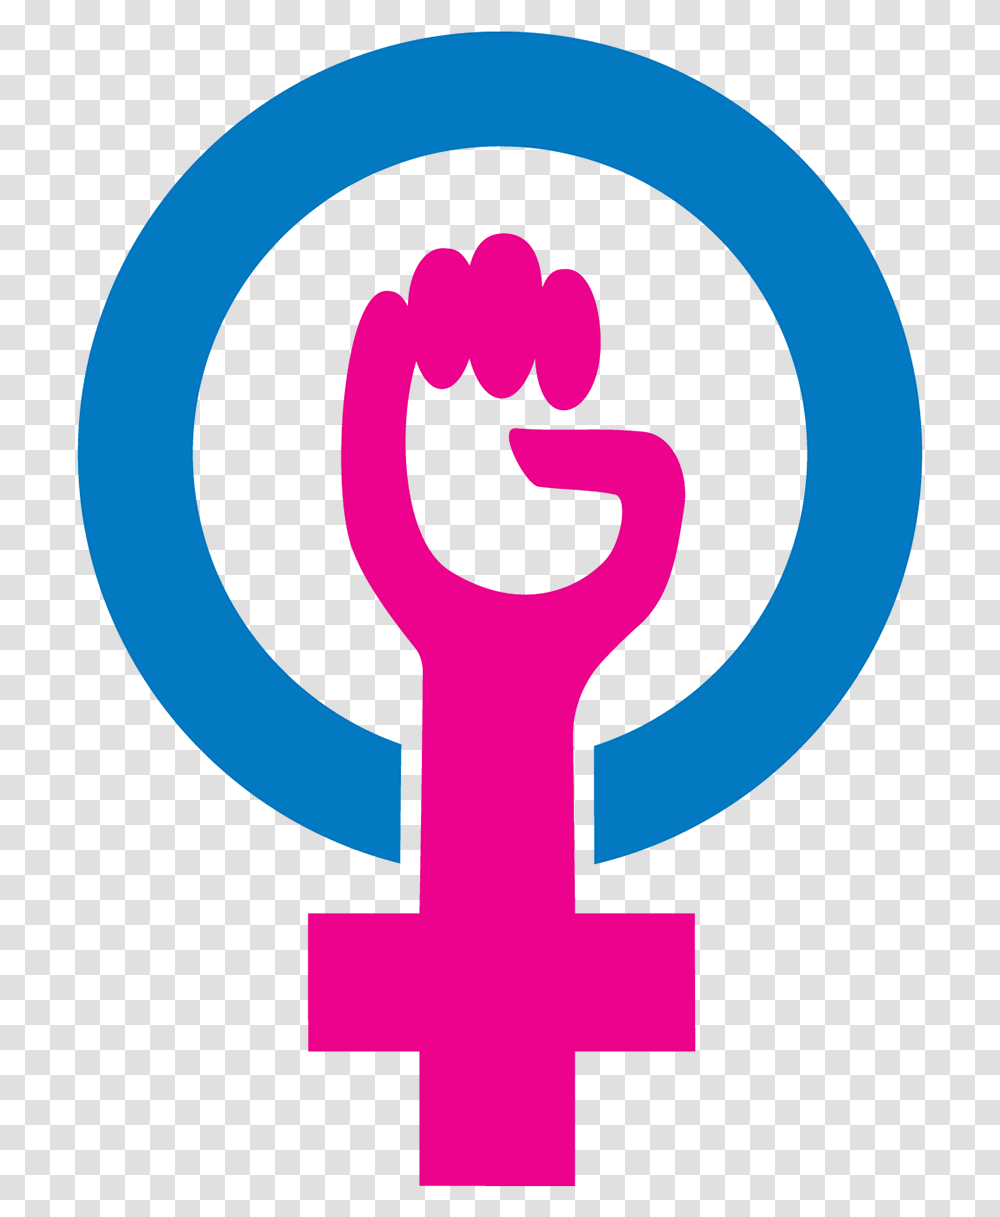 Twitter Emoji For International Day Of The Girl International Day Of Girl Symbol, Hand, Poster, Advertisement, Emblem Transparent Png